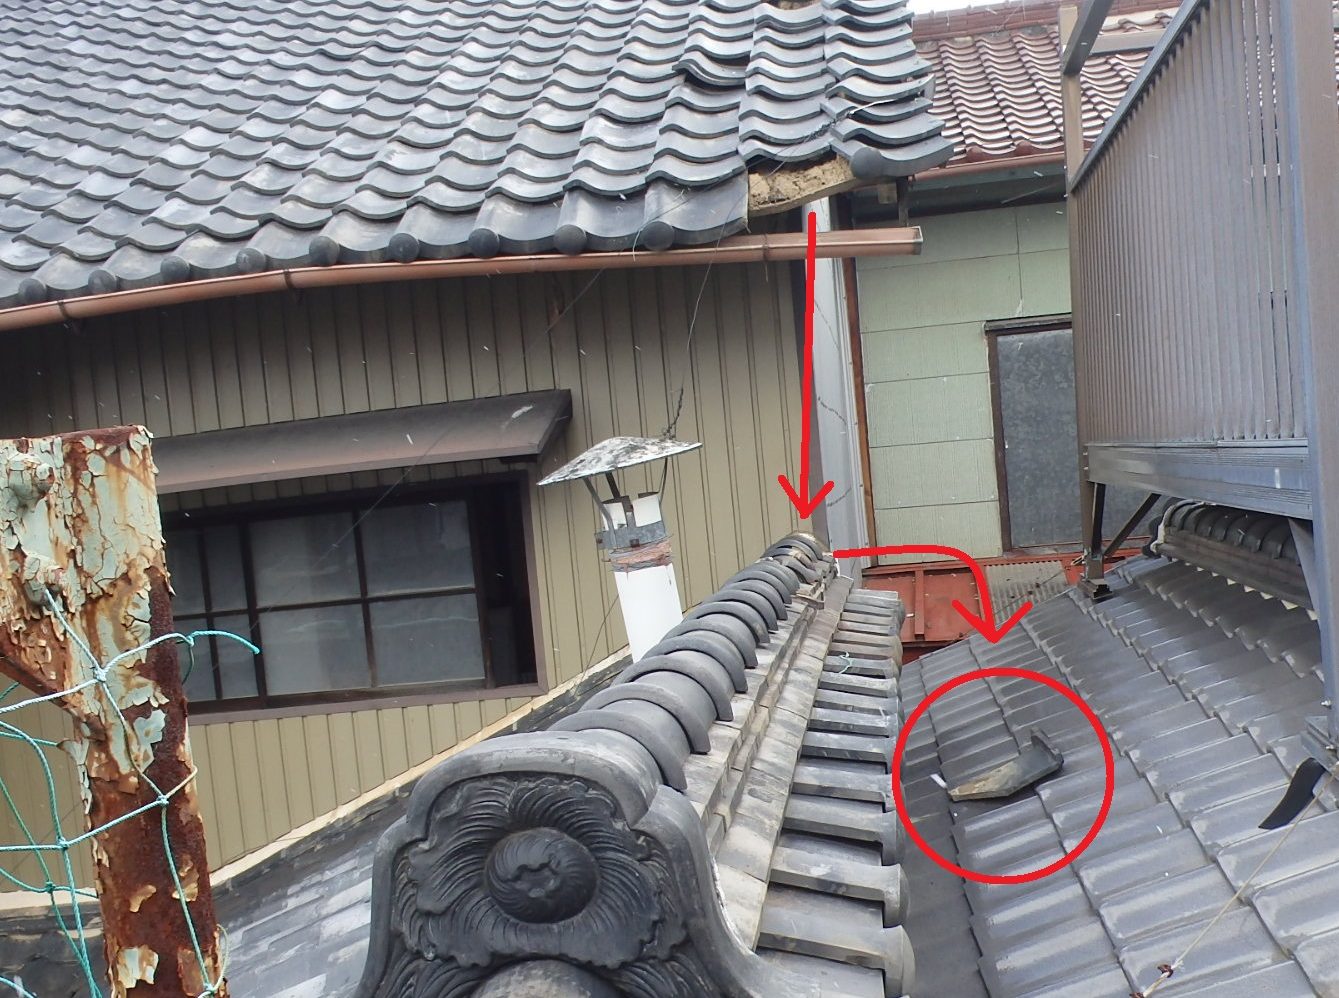 桑名市の瓦屋根、瓦の寿命を迎え軒瓦が隣の屋根に落ちている所